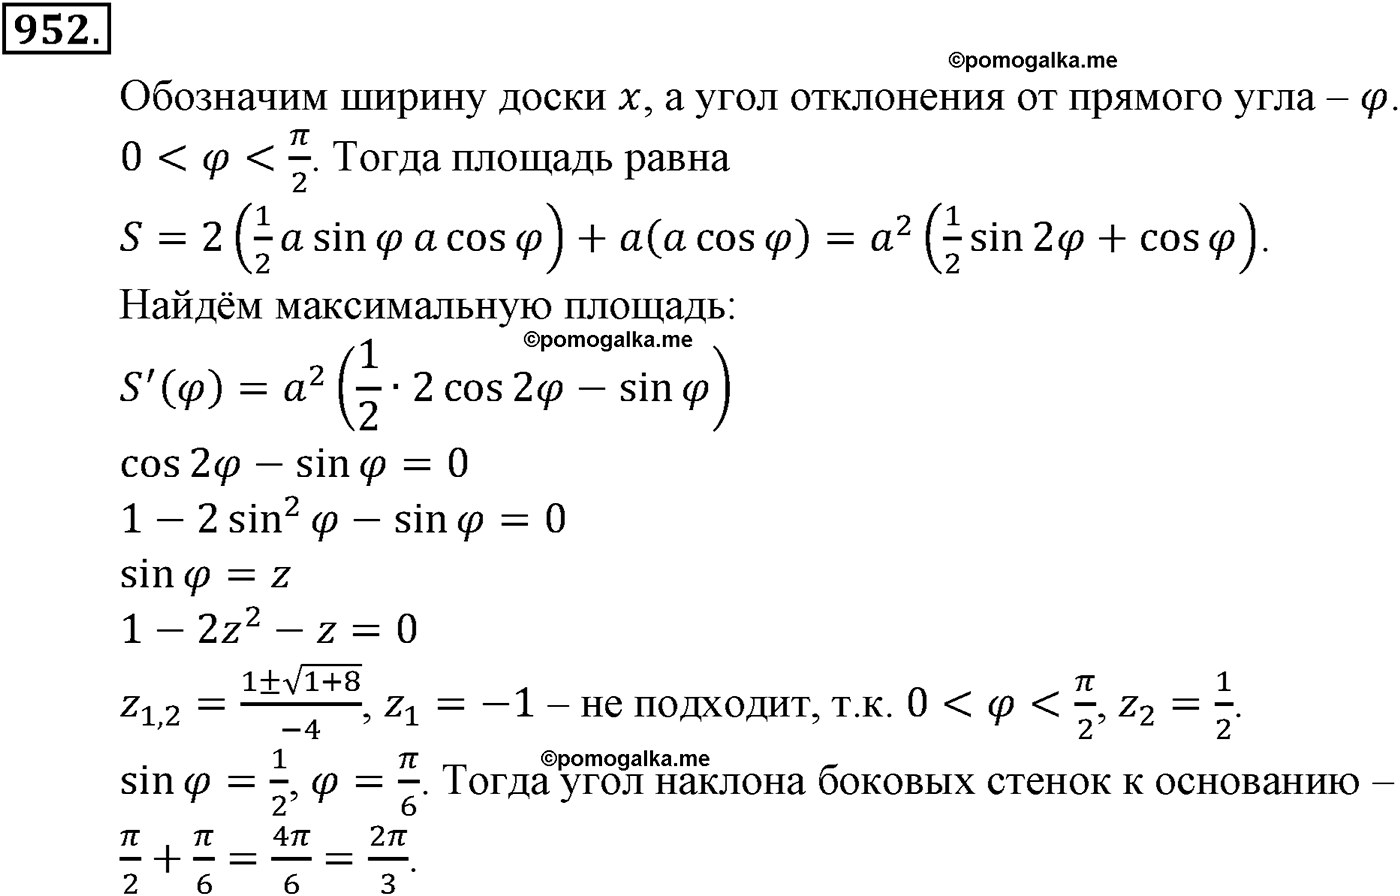 разбор задачи №952 по алгебре за 10-11 класс из учебника Алимова, Колягина